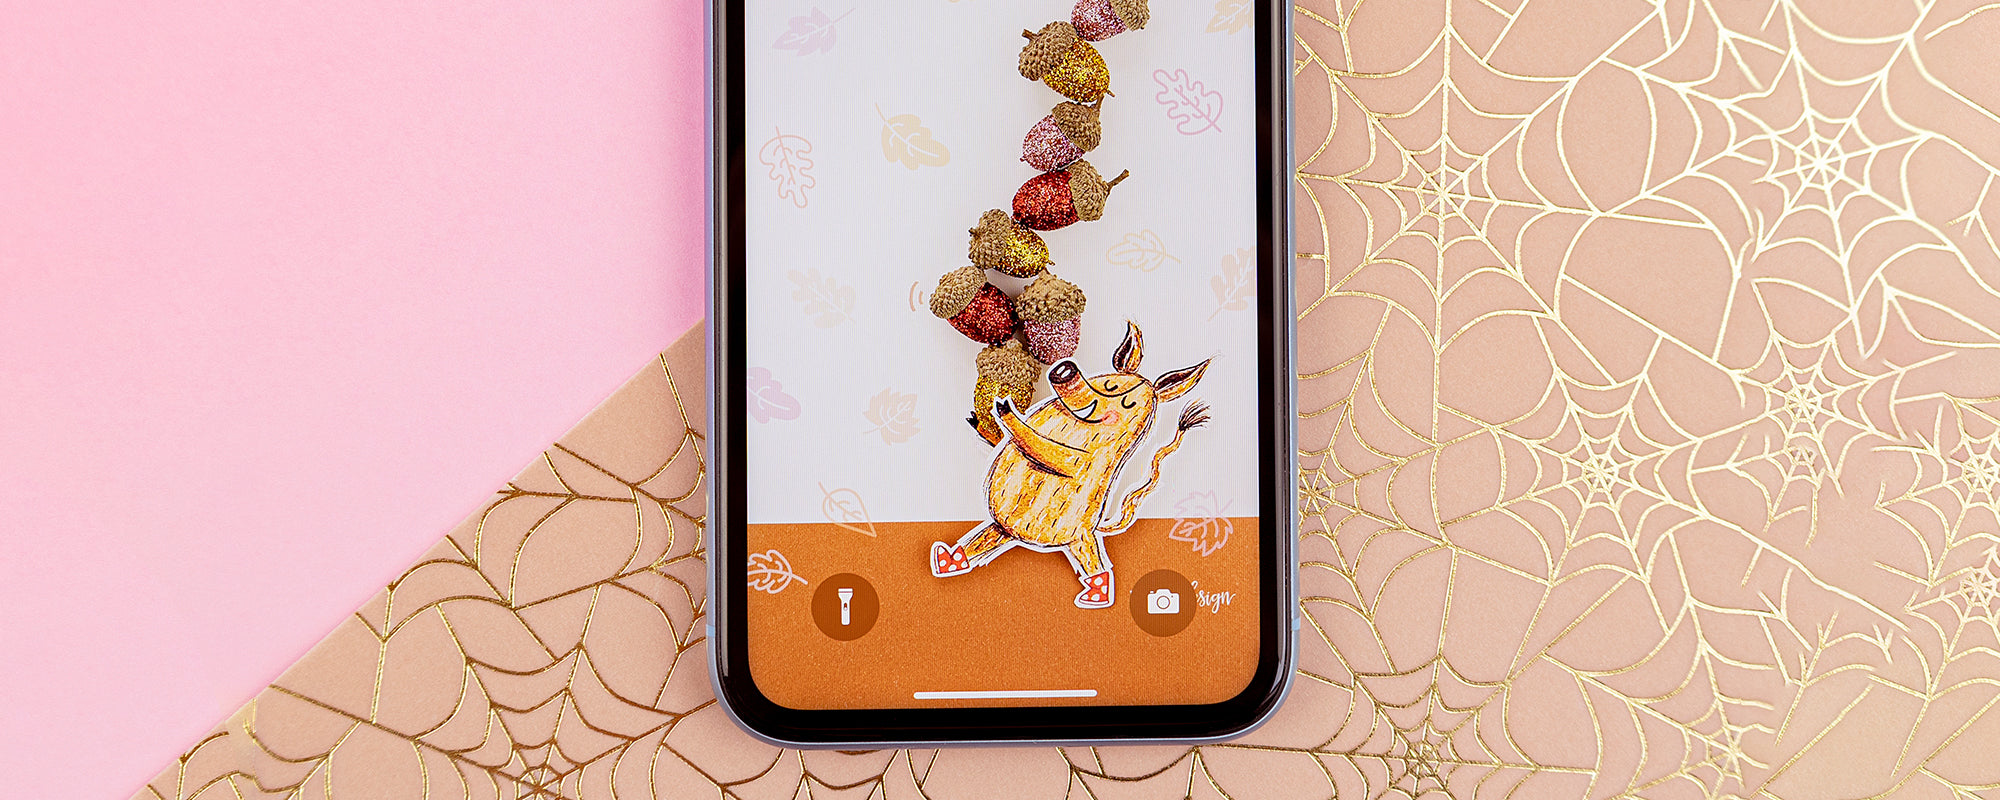 Klaar voor de herfst met deze gratis smartphone wallpaper